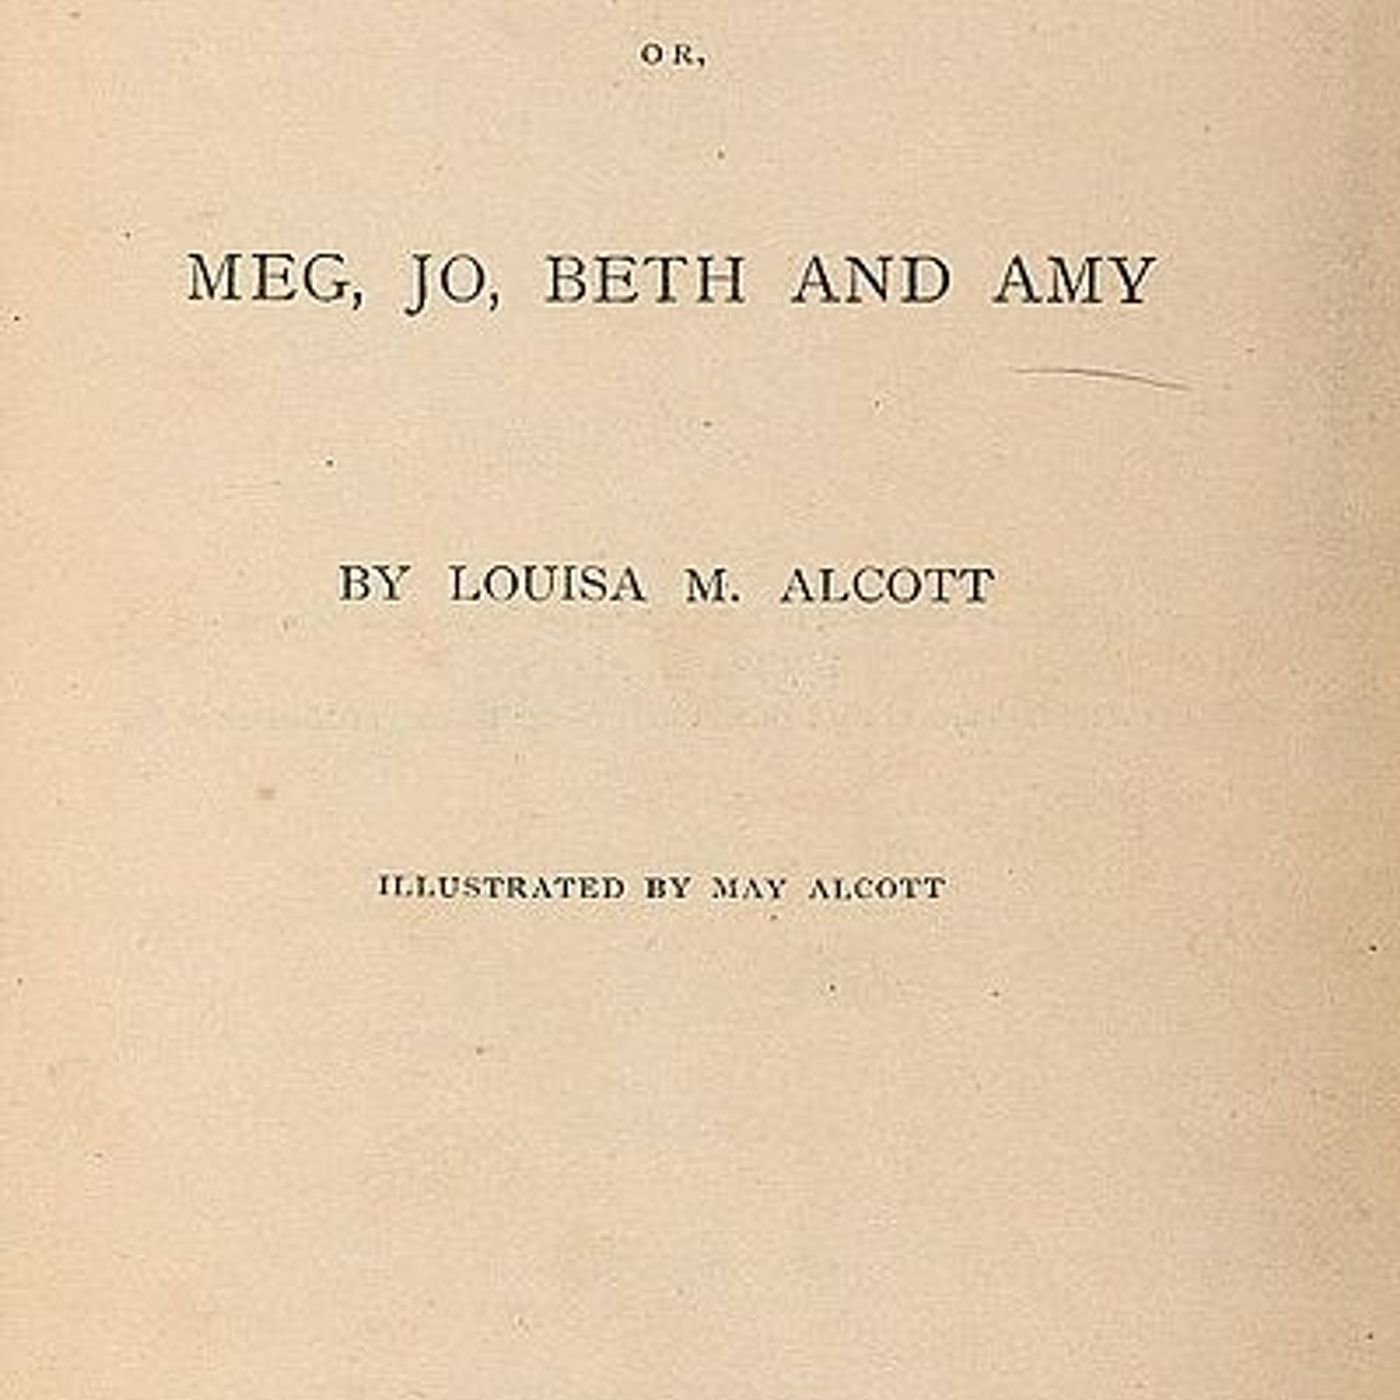 Little Women by Louisa May Alcott - Chapter 47